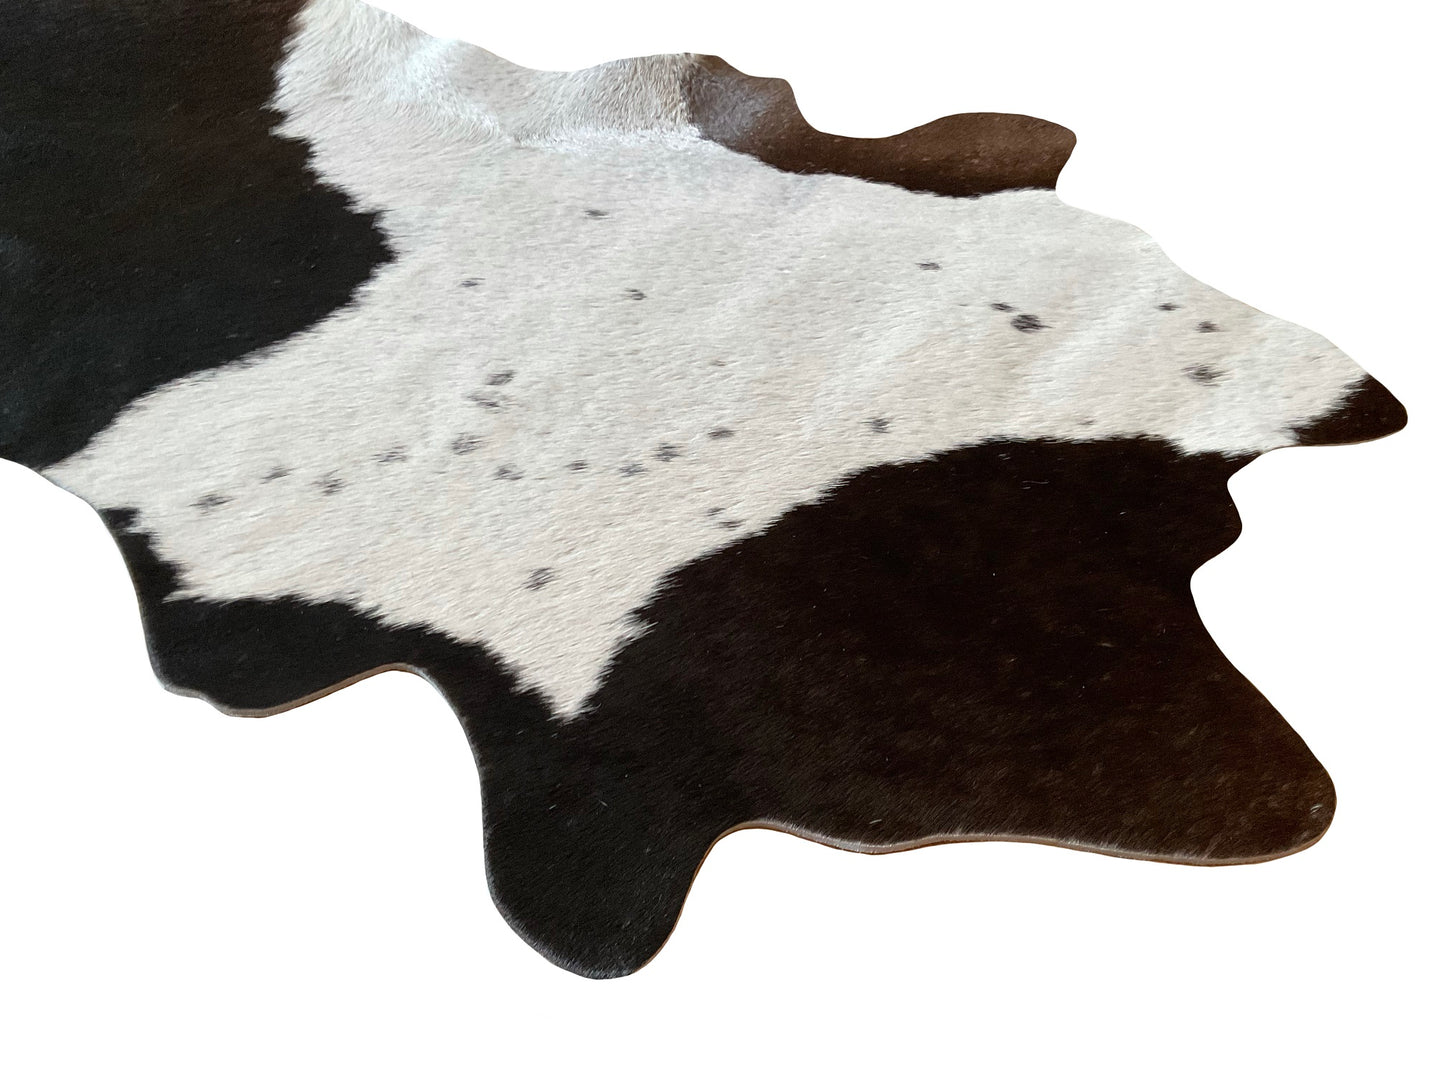 Echter Kuhfell Teppich klein, Handmade in Germany, geruchsneutral, Rinderfell ideal für Wohnzimmer Esszimmer Flur  "Die originale Schönheit" (Gr.160x70cm, schwarz weiss)